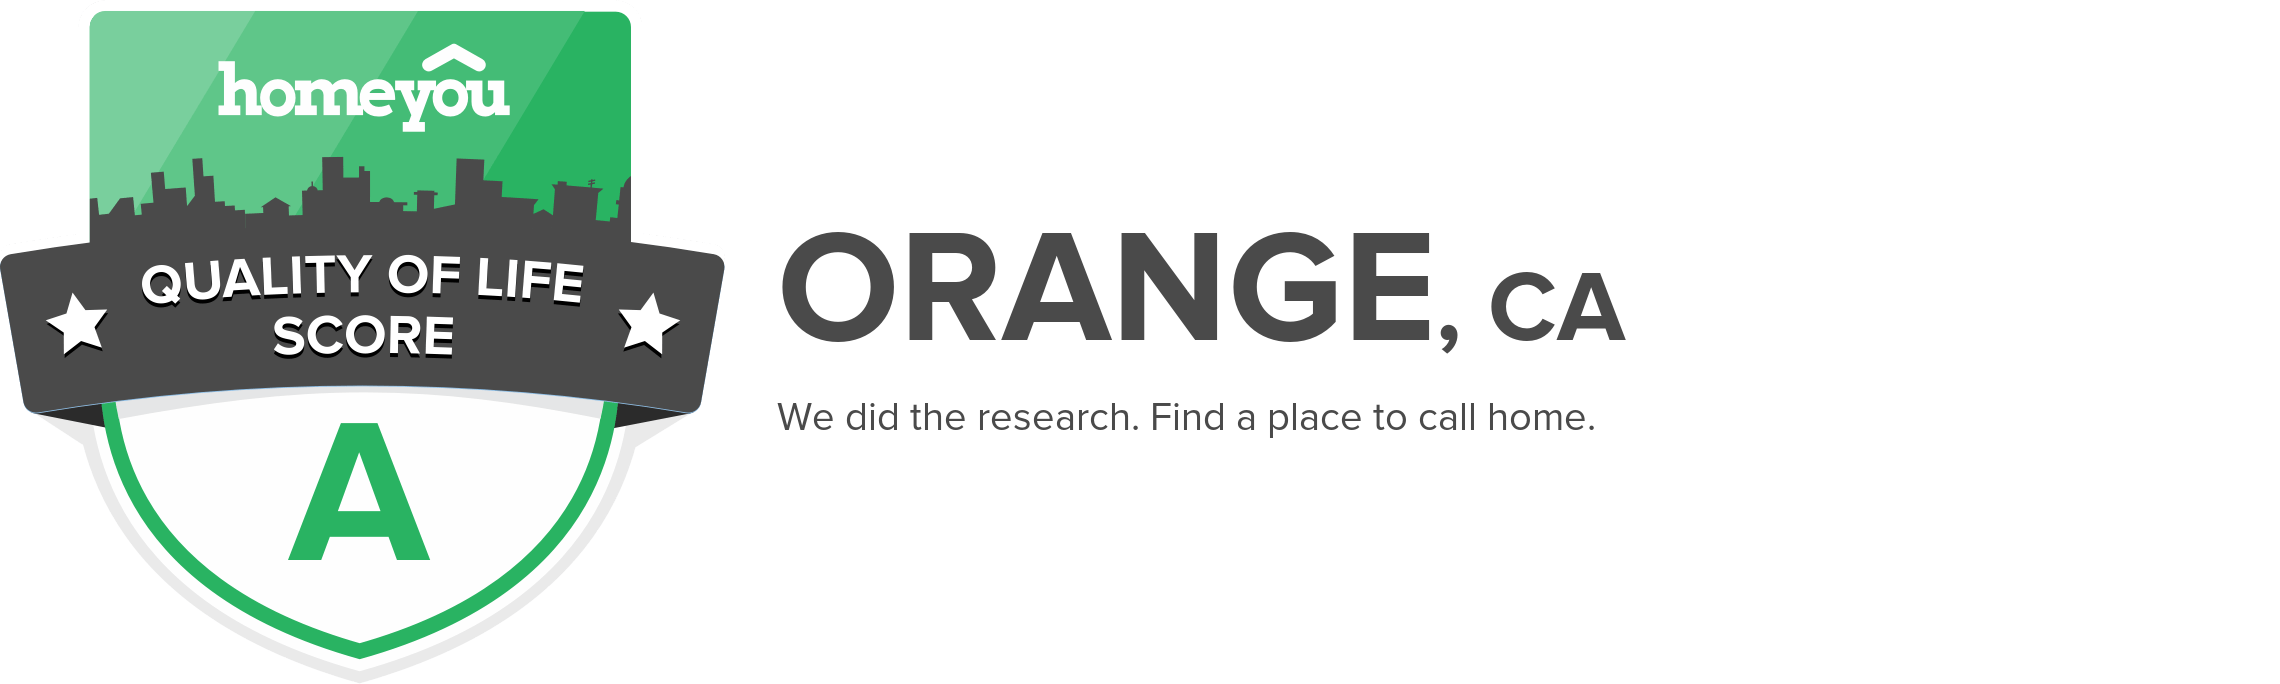 Orange, CA